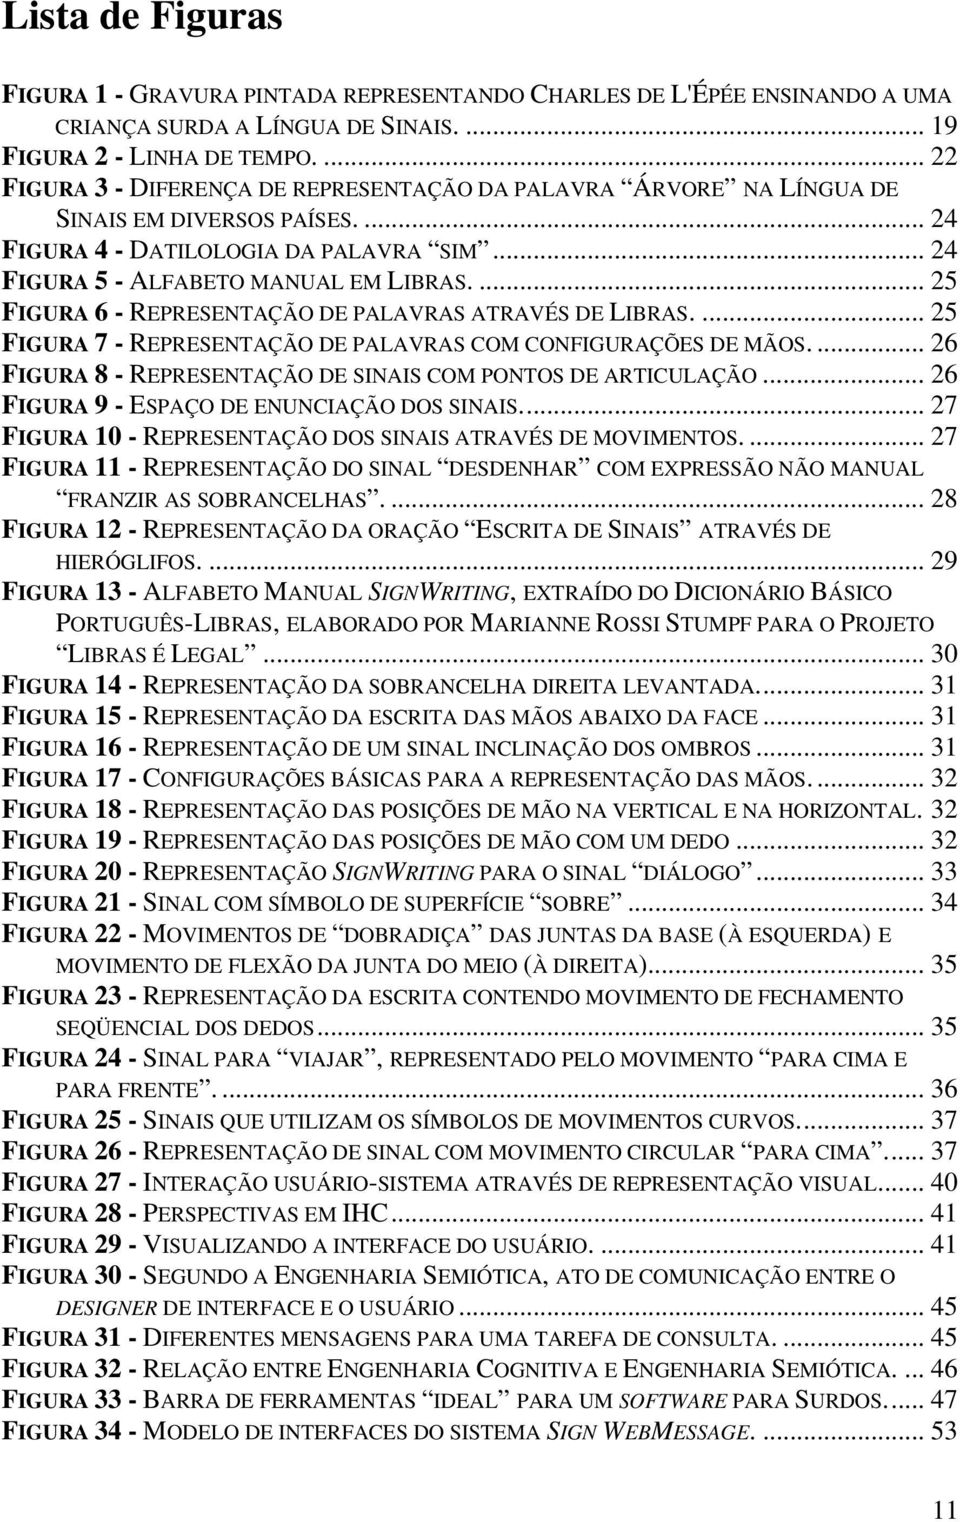 ... 25 FIGURA 6 - REPRESENTAÇÃO DE PALAVRAS ATRAVÉS DE LIBRAS.... 25 FIGURA 7 - REPRESENTAÇÃO DE PALAVRAS COM CONFIGURAÇÕES DE MÃOS.... 26 FIGURA 8 - REPRESENTAÇÃO DE SINAIS COM PONTOS DE ARTICULAÇÃO.